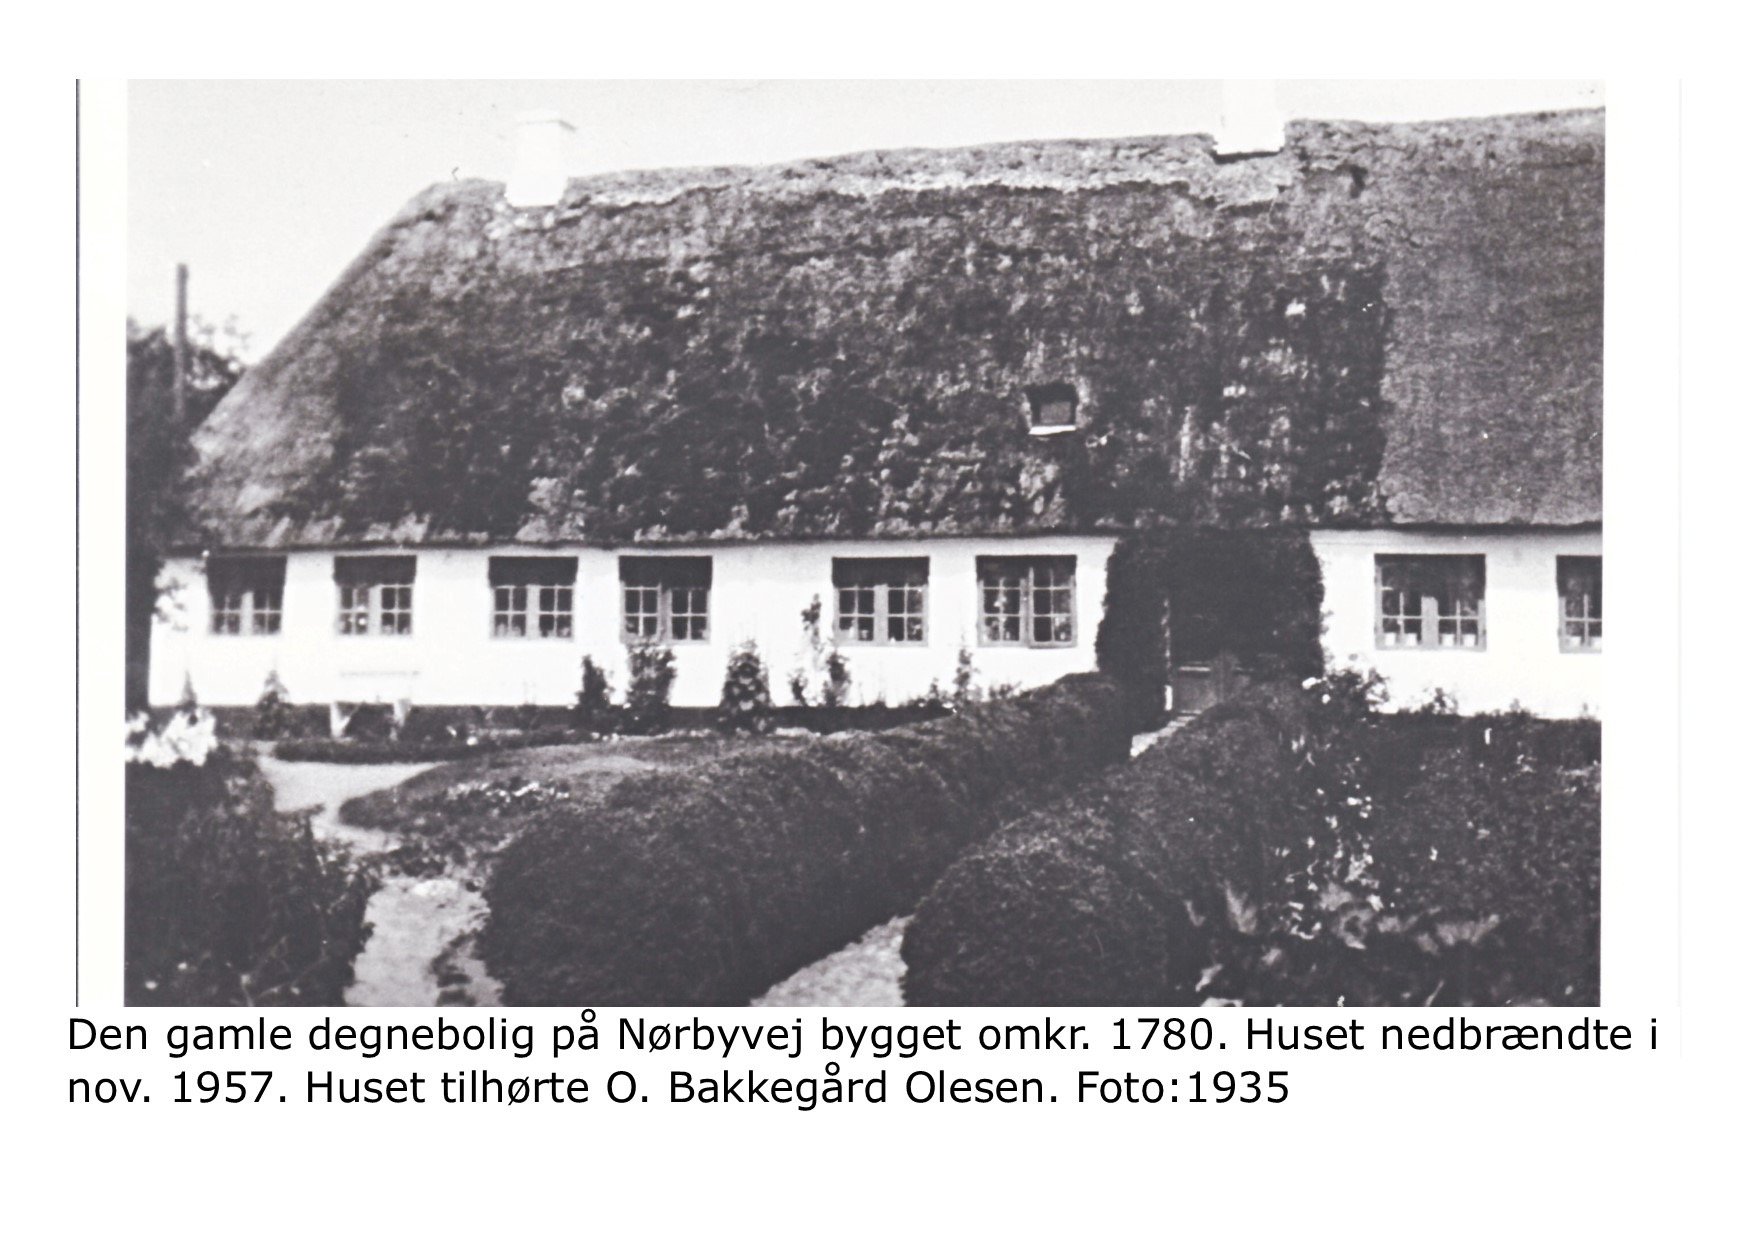 Den gamle degnebolig - nedbrændt 1957 - foto 1935 